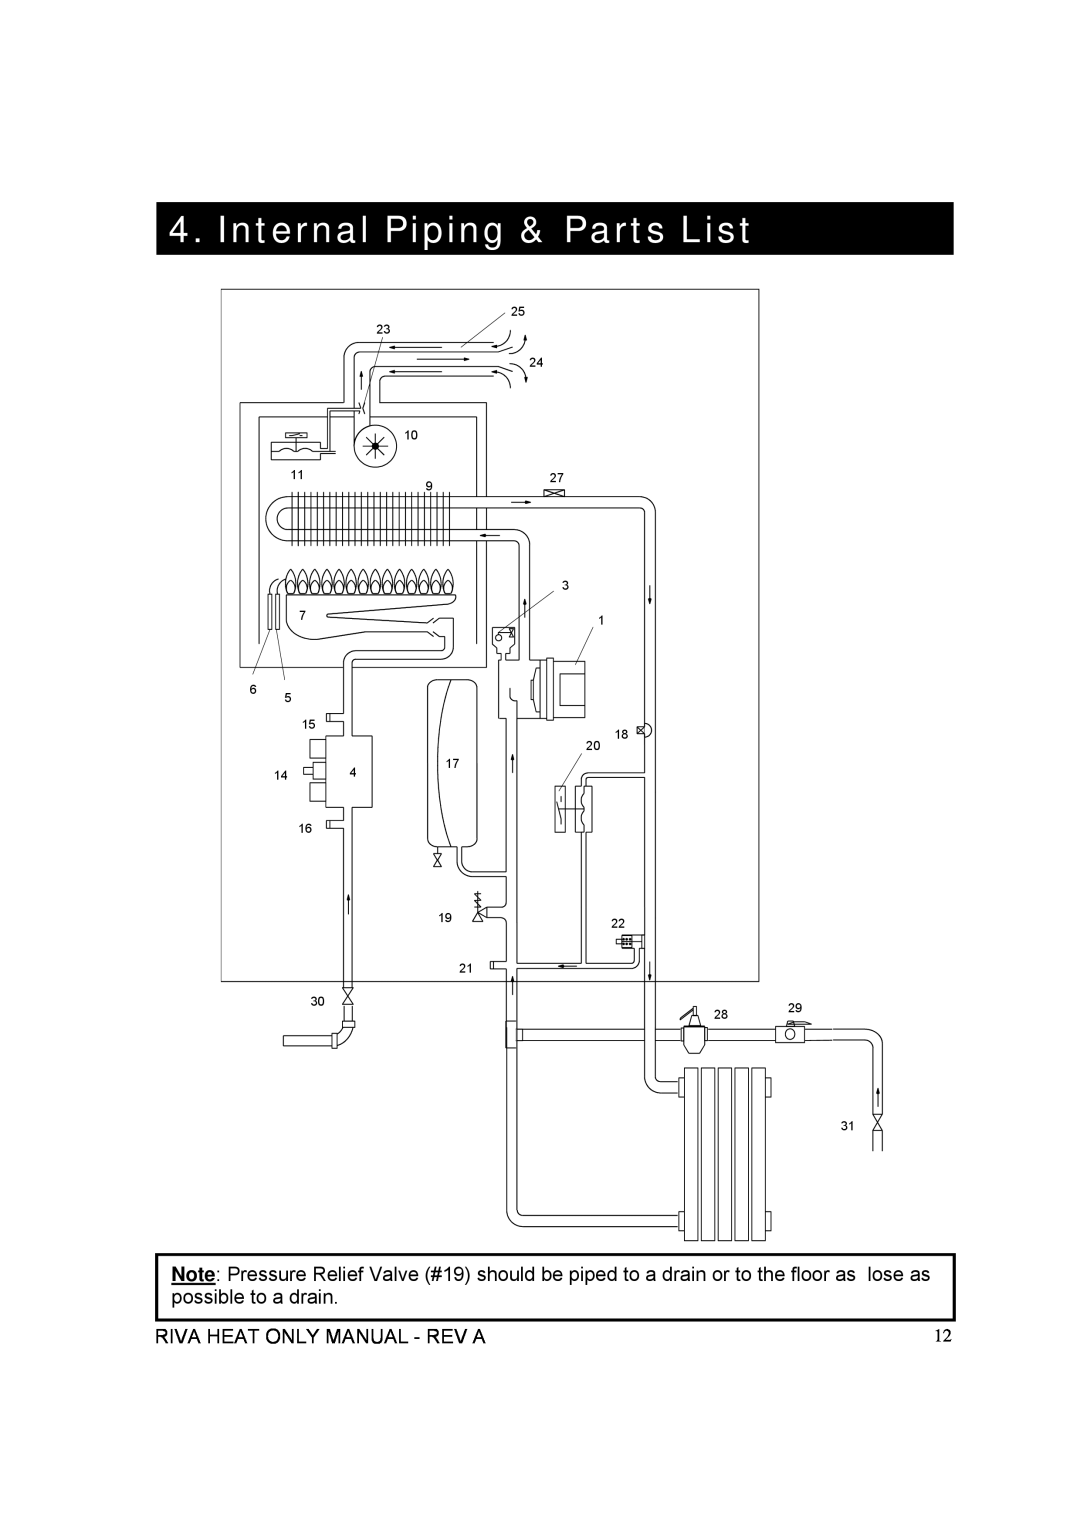 Verona WALL HUNG GAS BOILER manual Internal Piping & Parts List, Riva Heat Only Manual - Rev A 